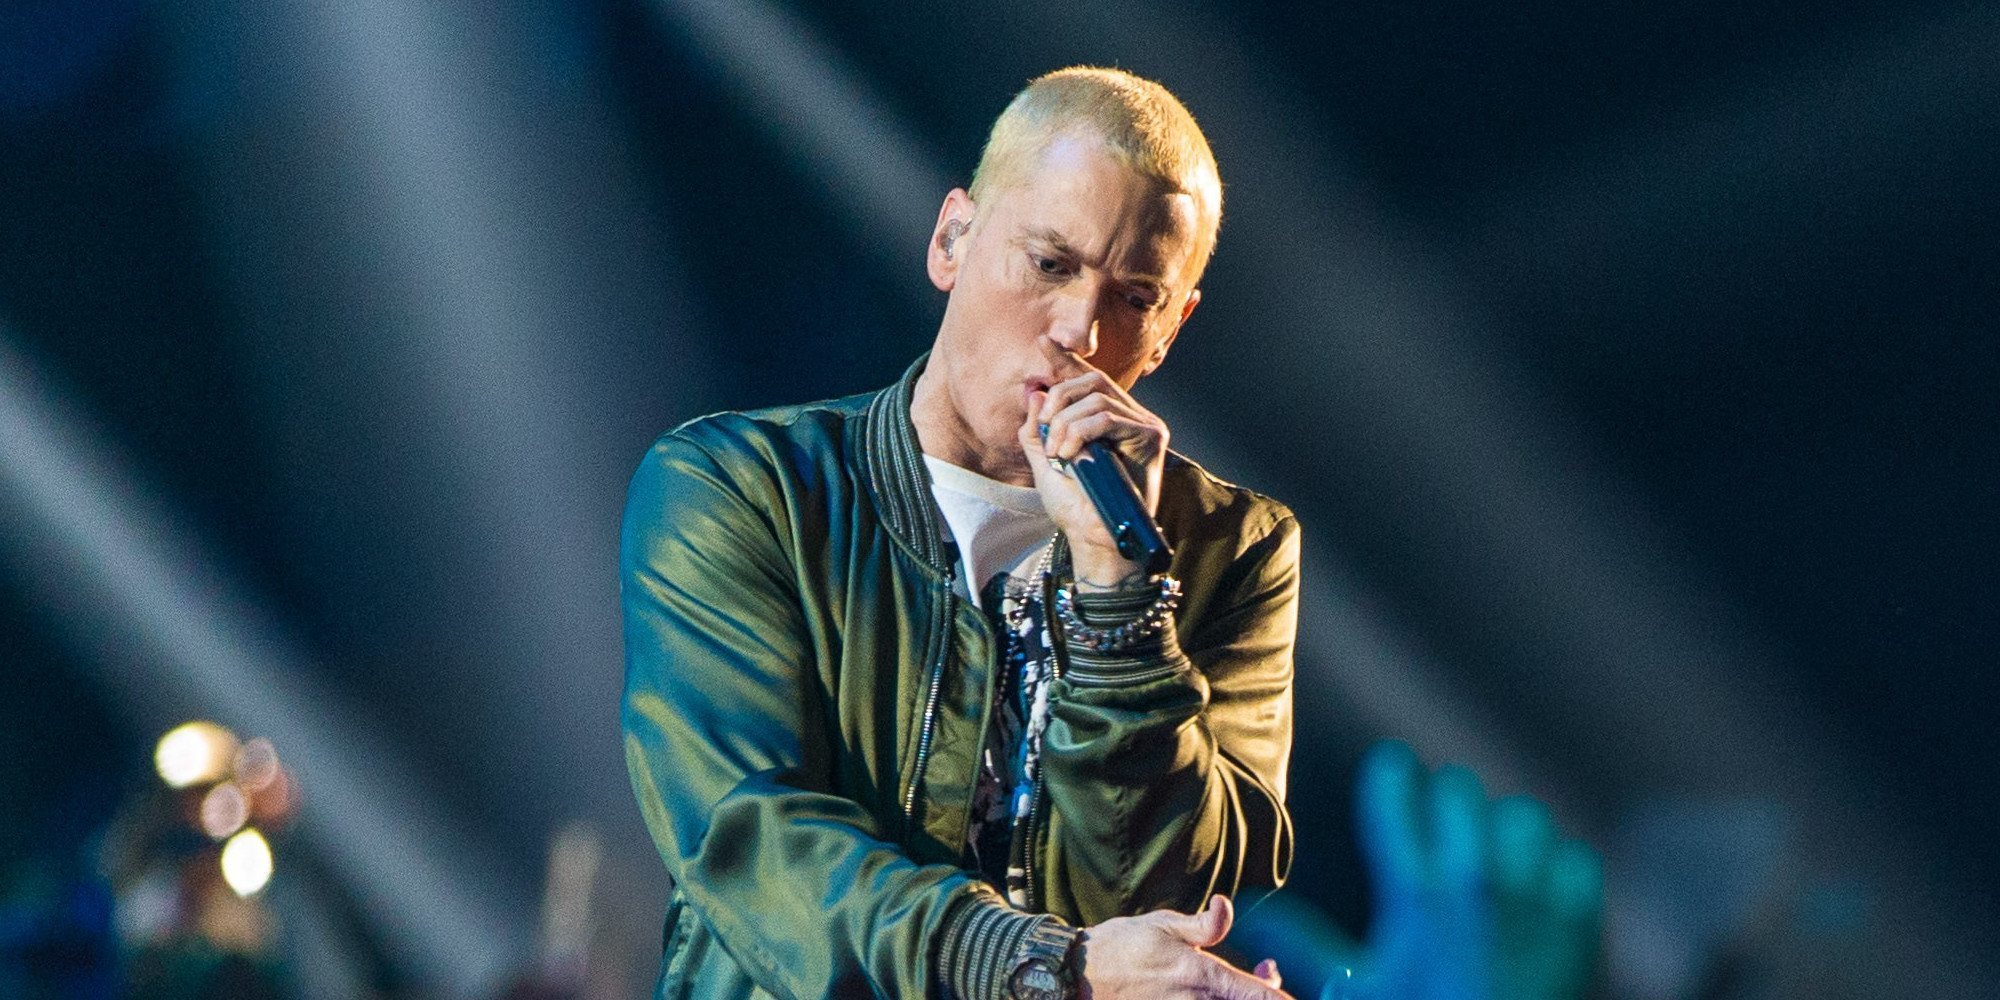 Eminem, Atacados y Bunbury, protagonistas de las novedades musicales de la semana